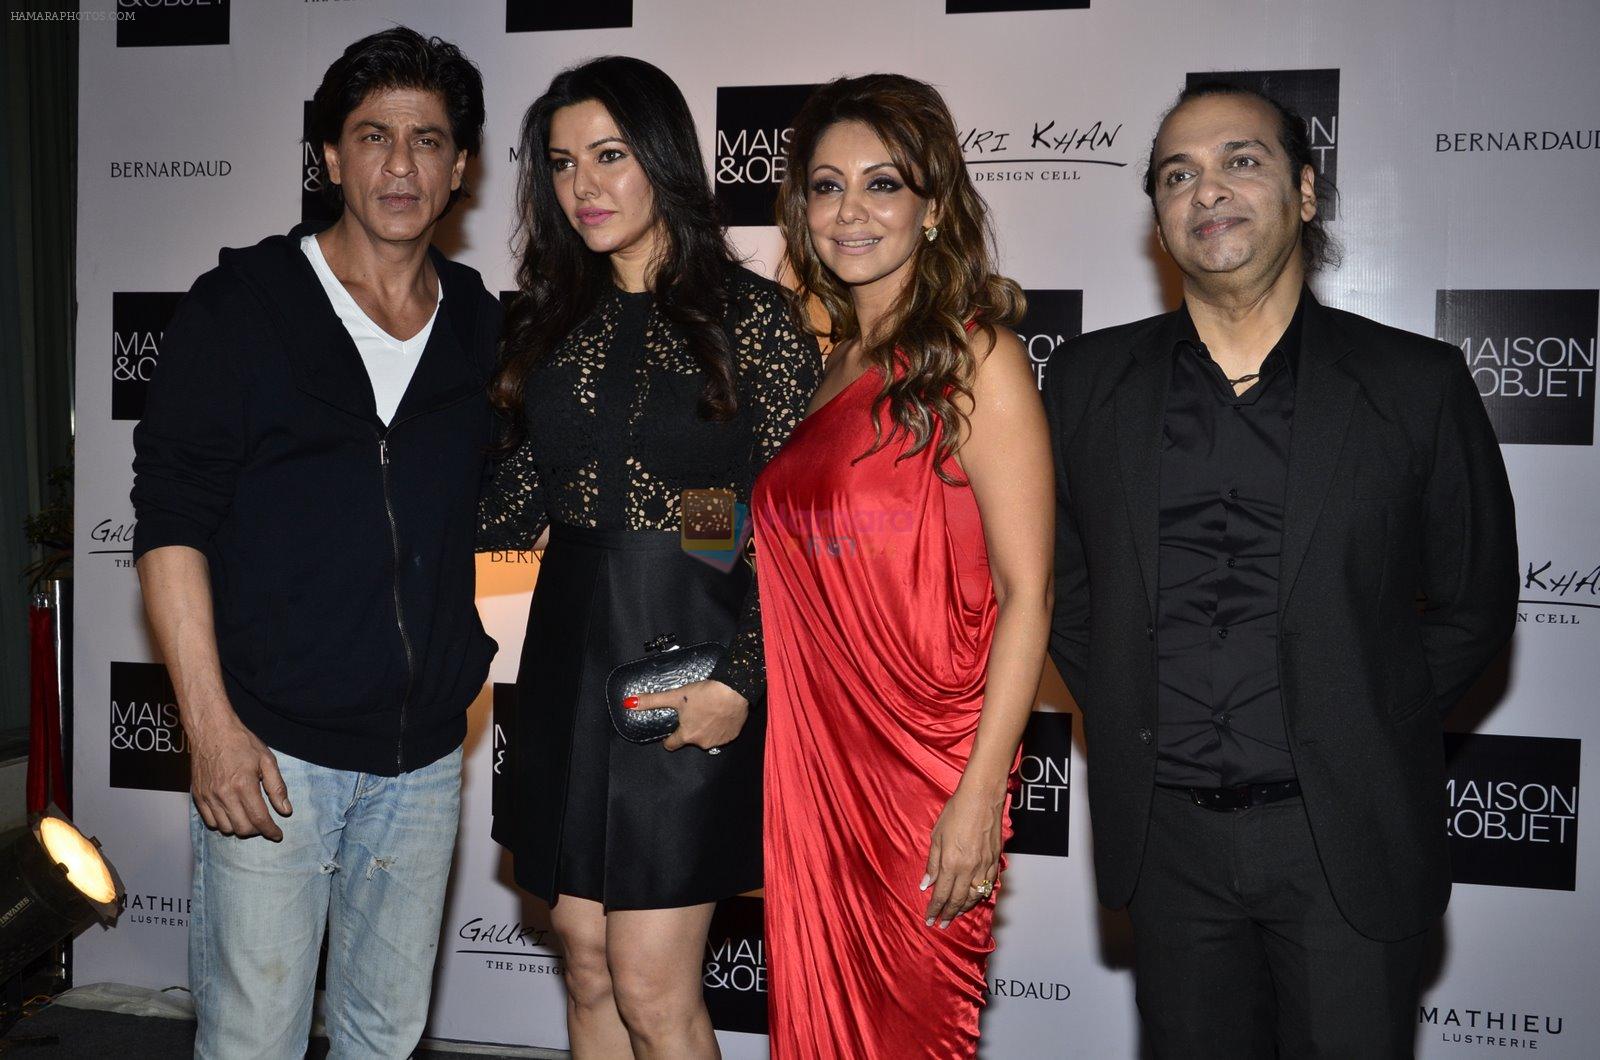 Shahrukh Khan, kehkashan patel, Gauri Khan at Gauri Khan's The Design Cell and Maison & Objet cocktail evening in Lower Parel, Mumbai on 11th Nov 2014